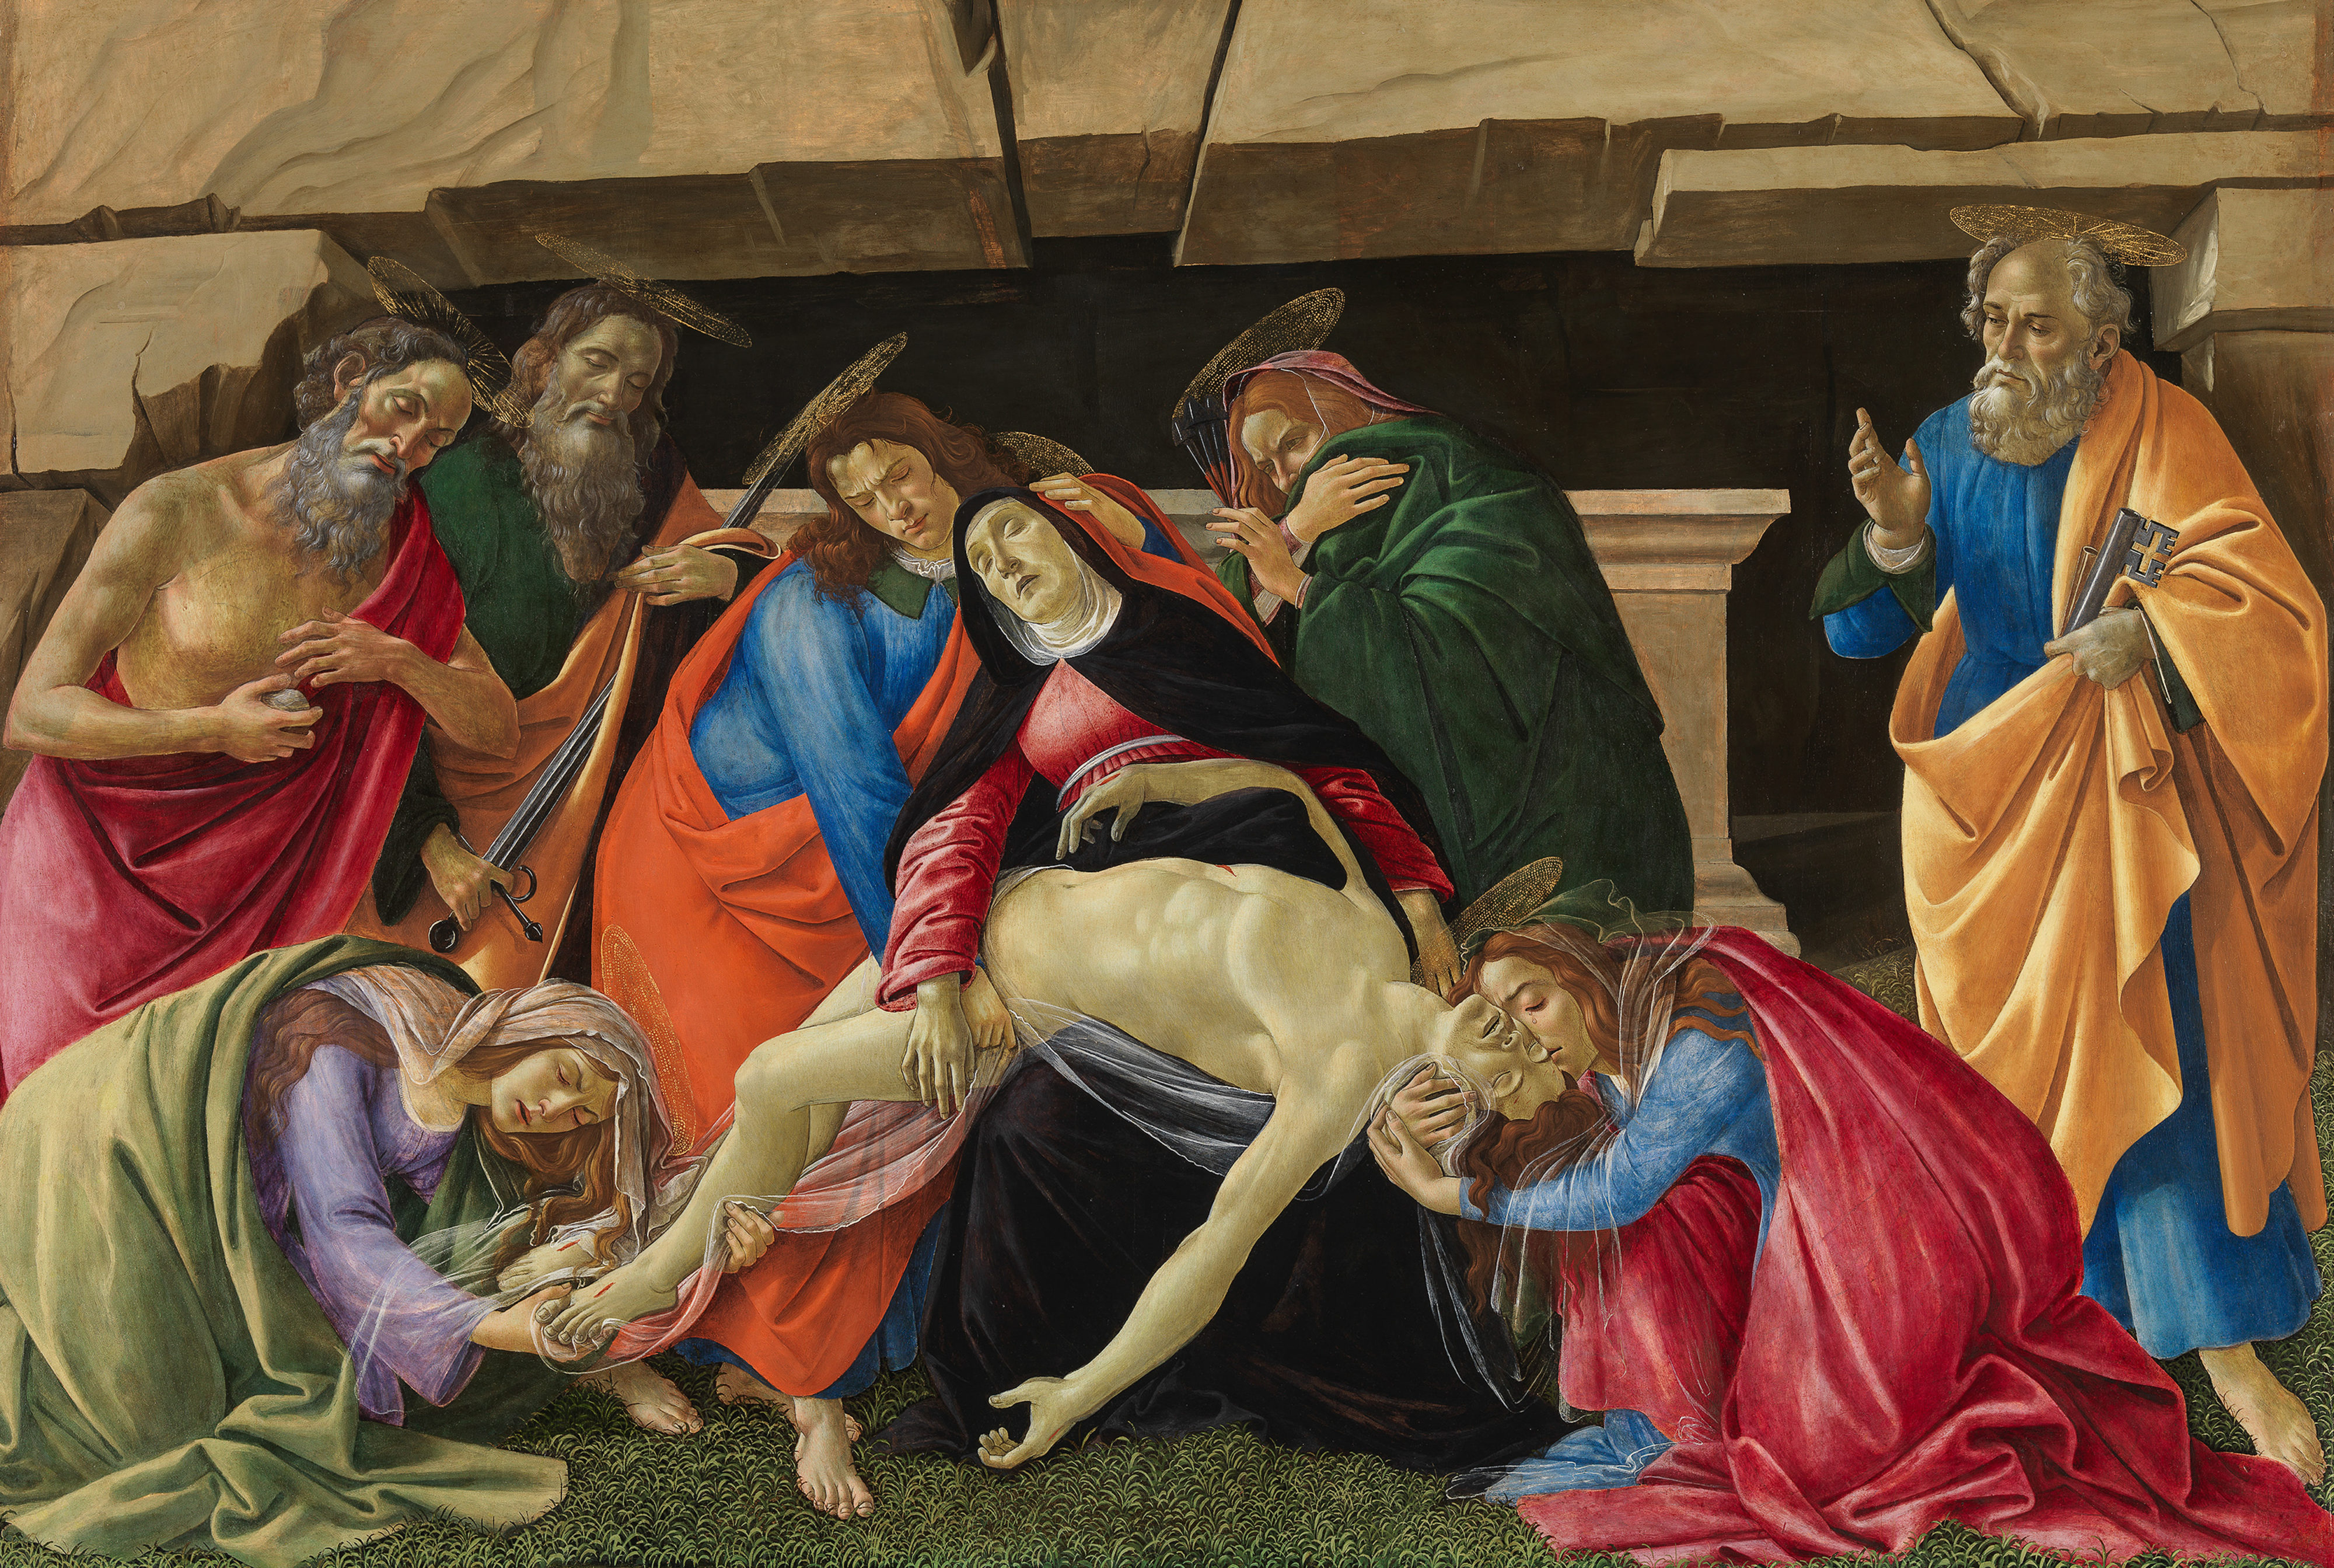 Meisterwerke von Botticelli und Fra Bartolommeo Beweinung nach Restaurierung